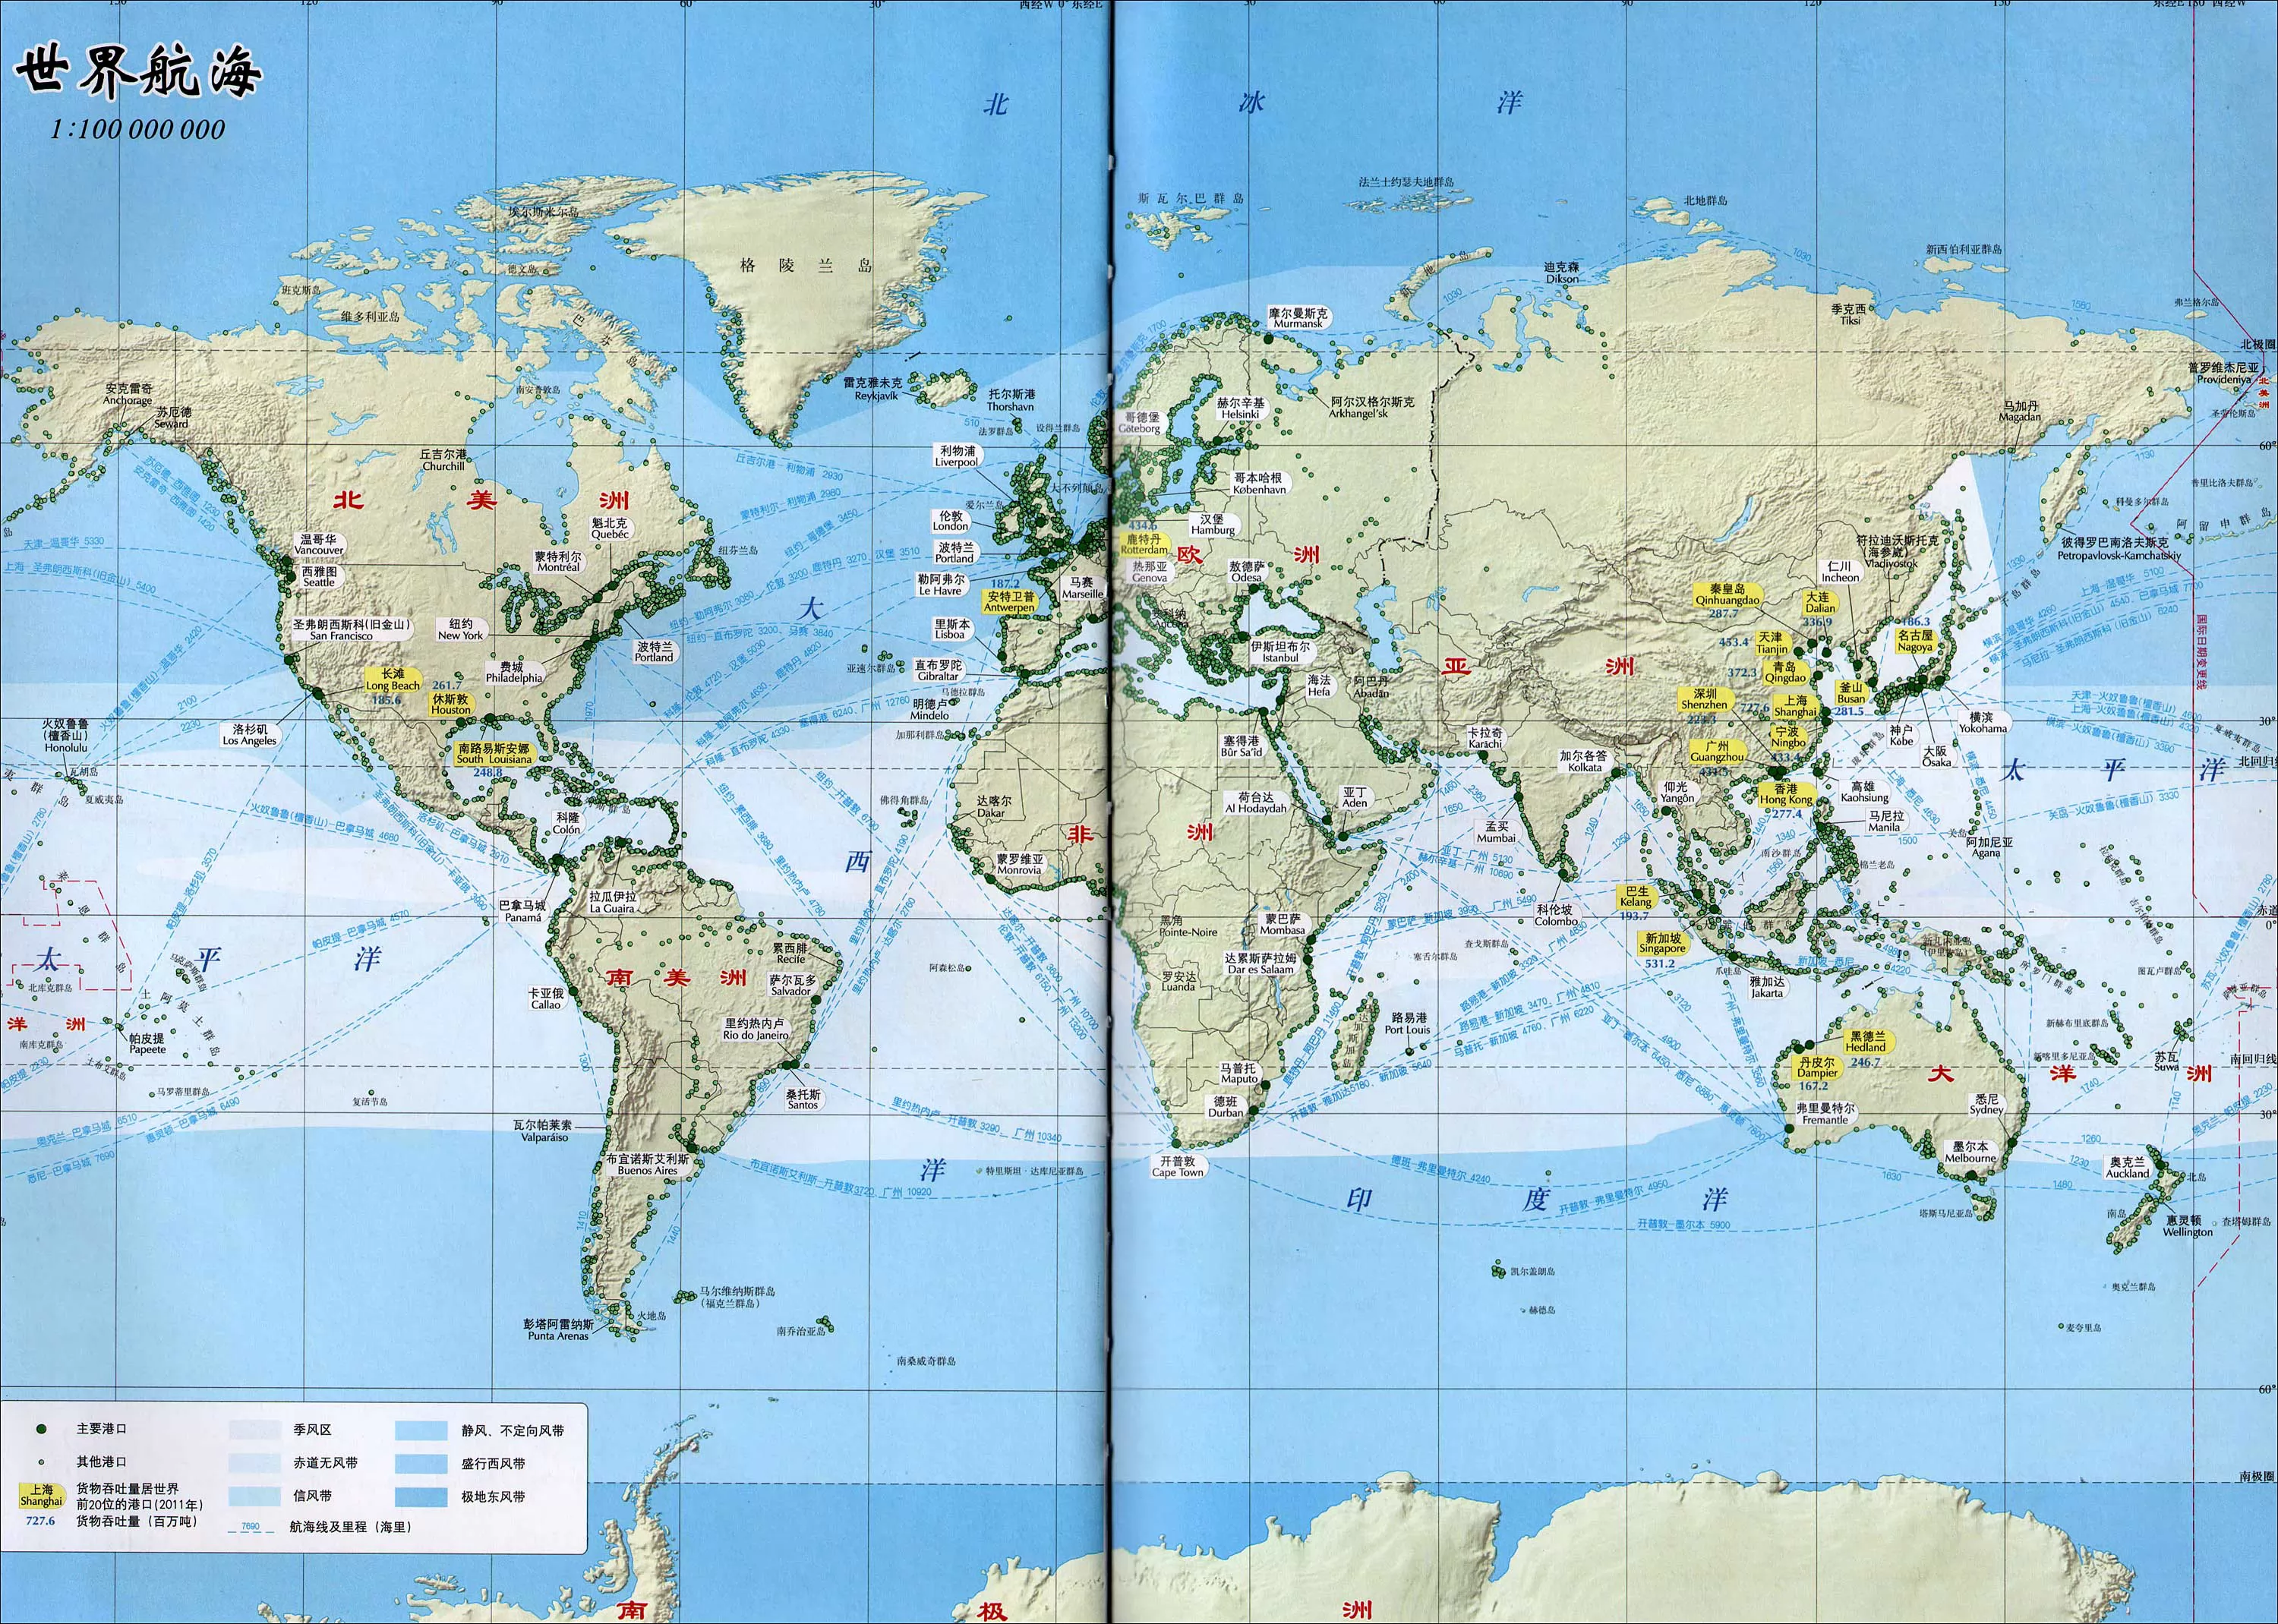 世界主要海峡及运河图_万图壁纸网